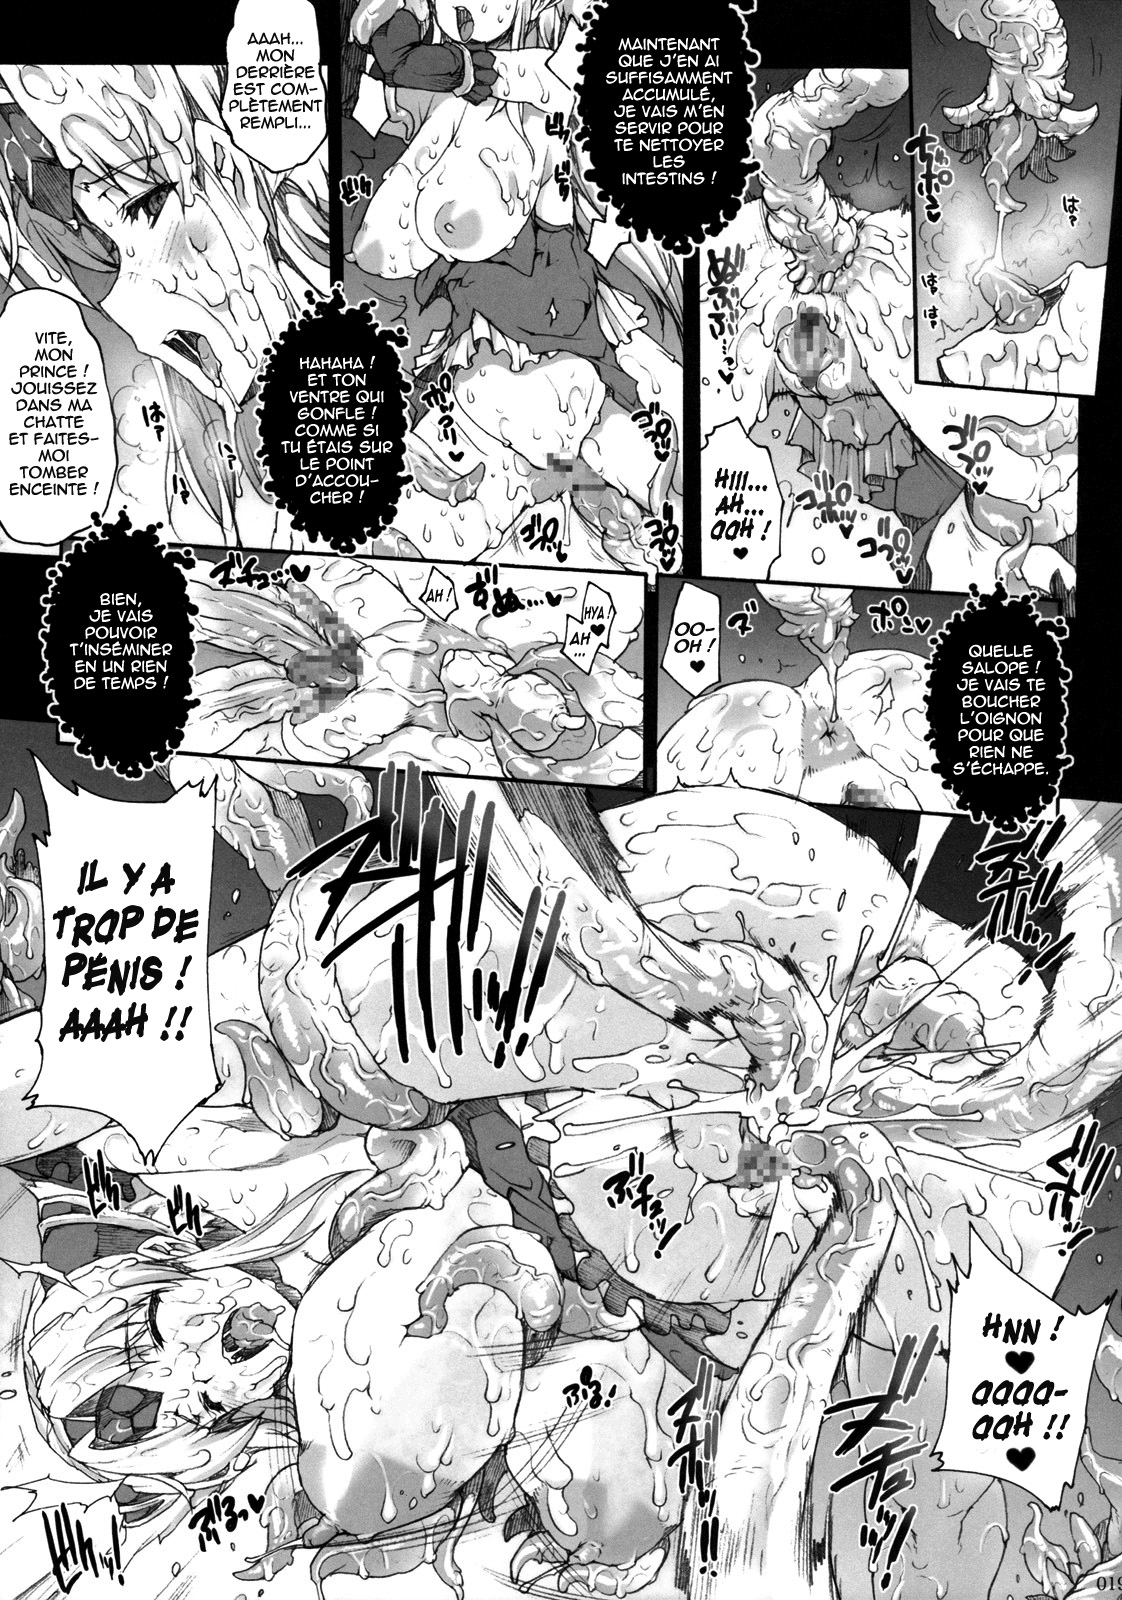 Injiru Oujo IV - Erotic Juice Princess 4 numero d'image 15